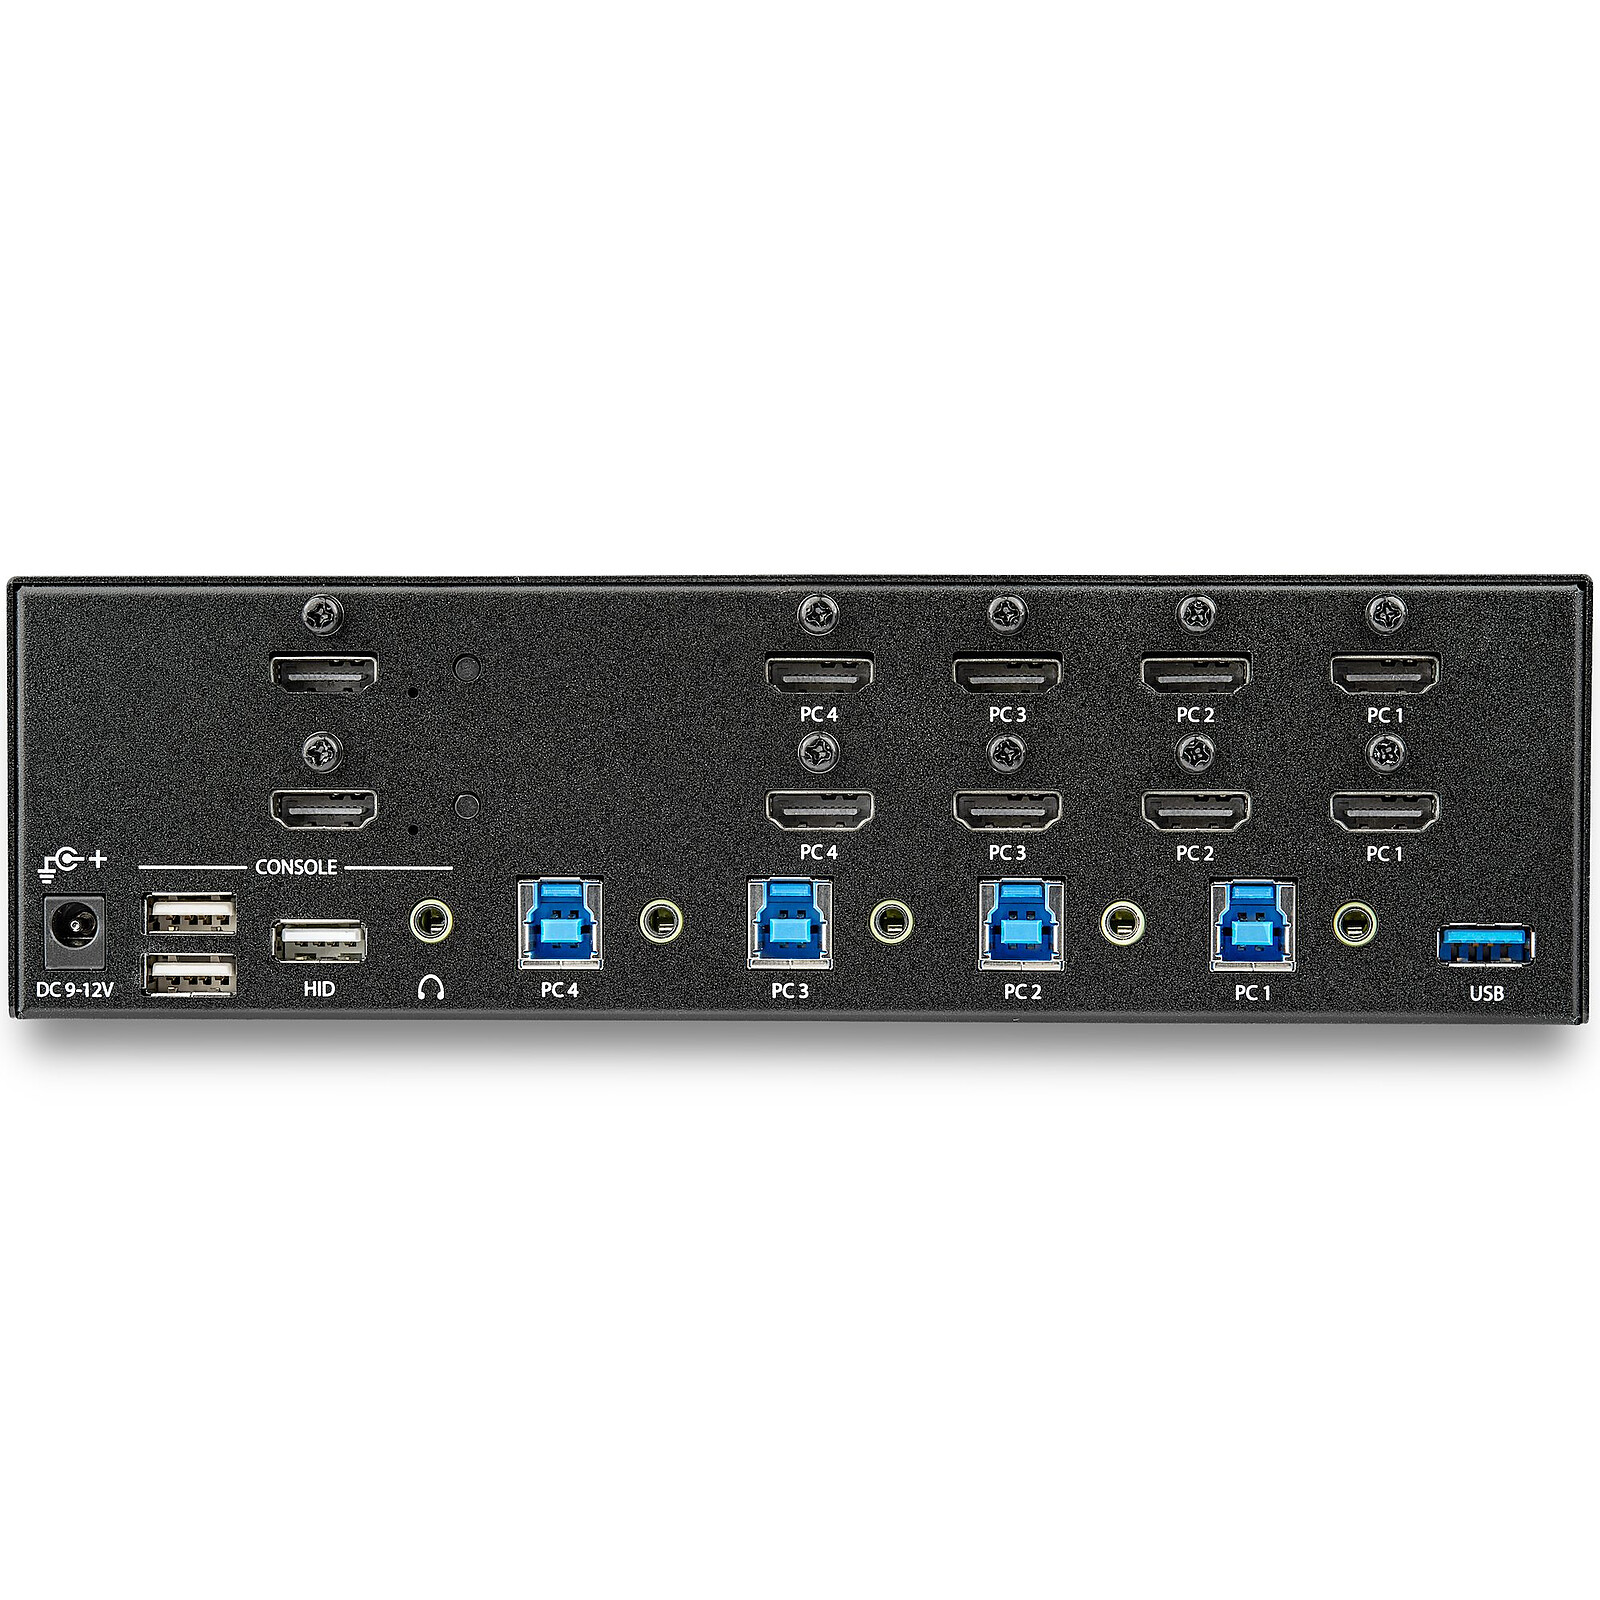 KVM Switch HDMI 2 Port, 3 USB 2.0 Hub